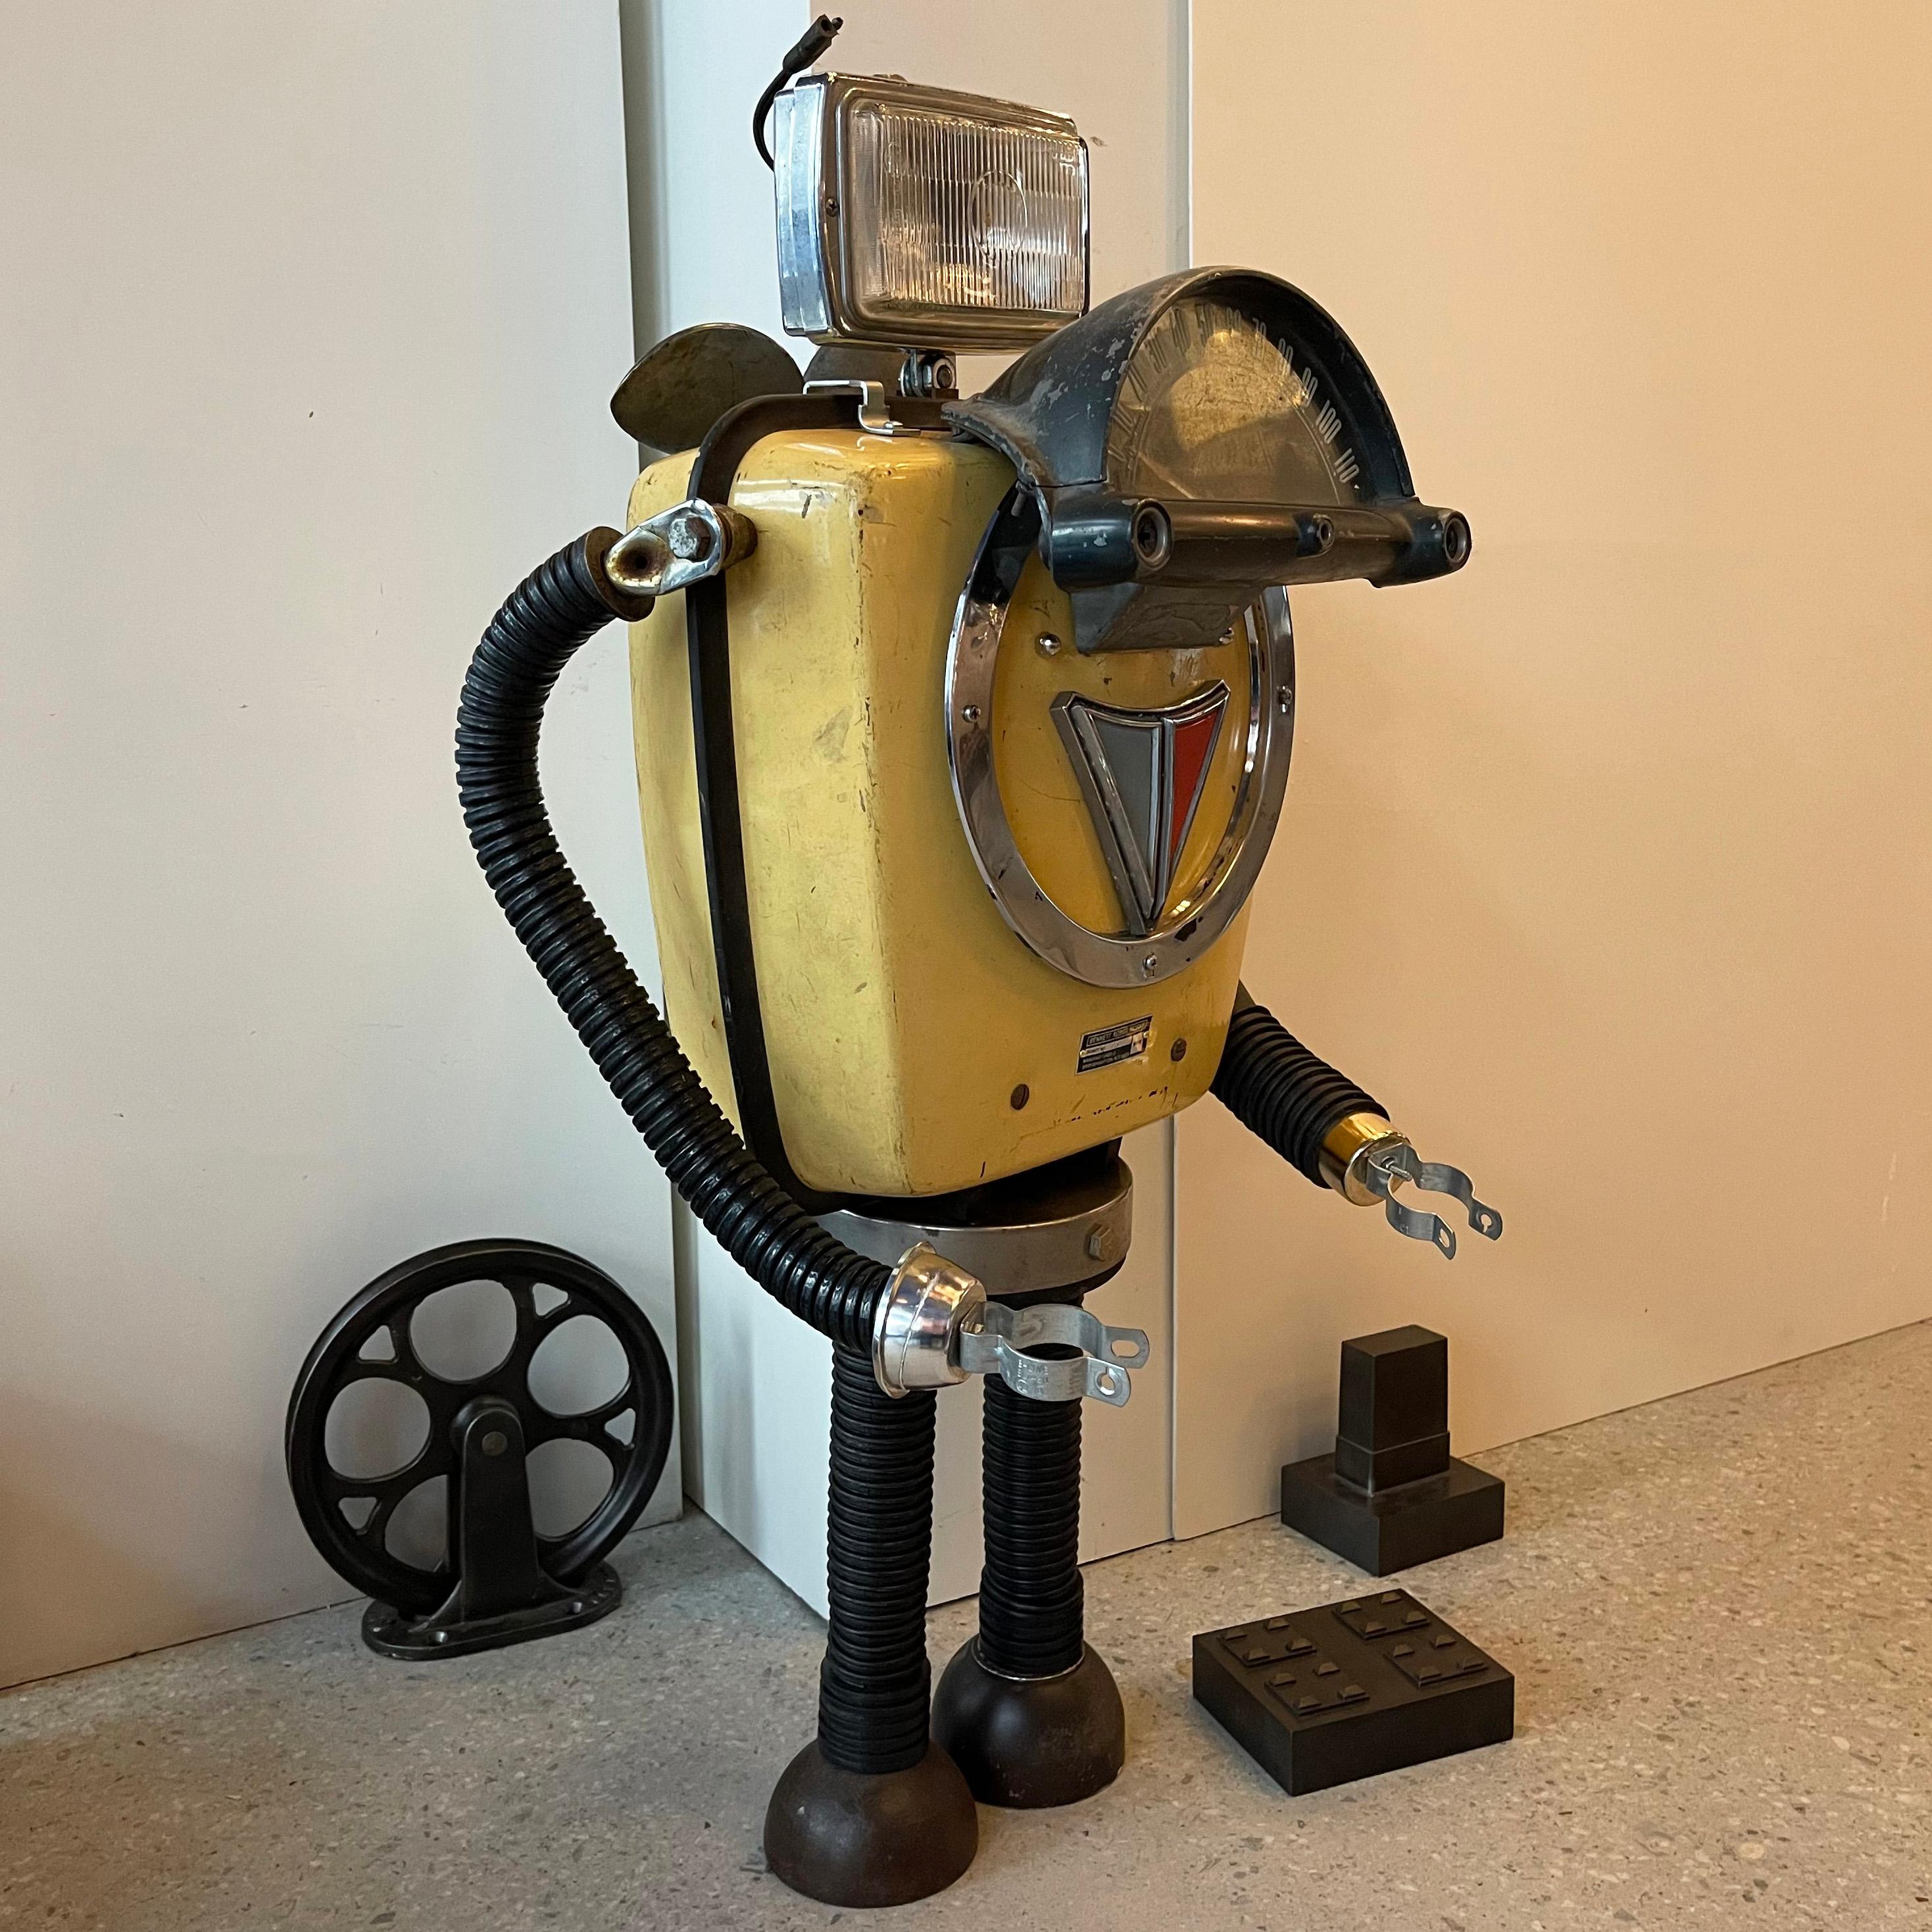 Machine Age Marchal Robot Sculpture by Bennett Robot Works